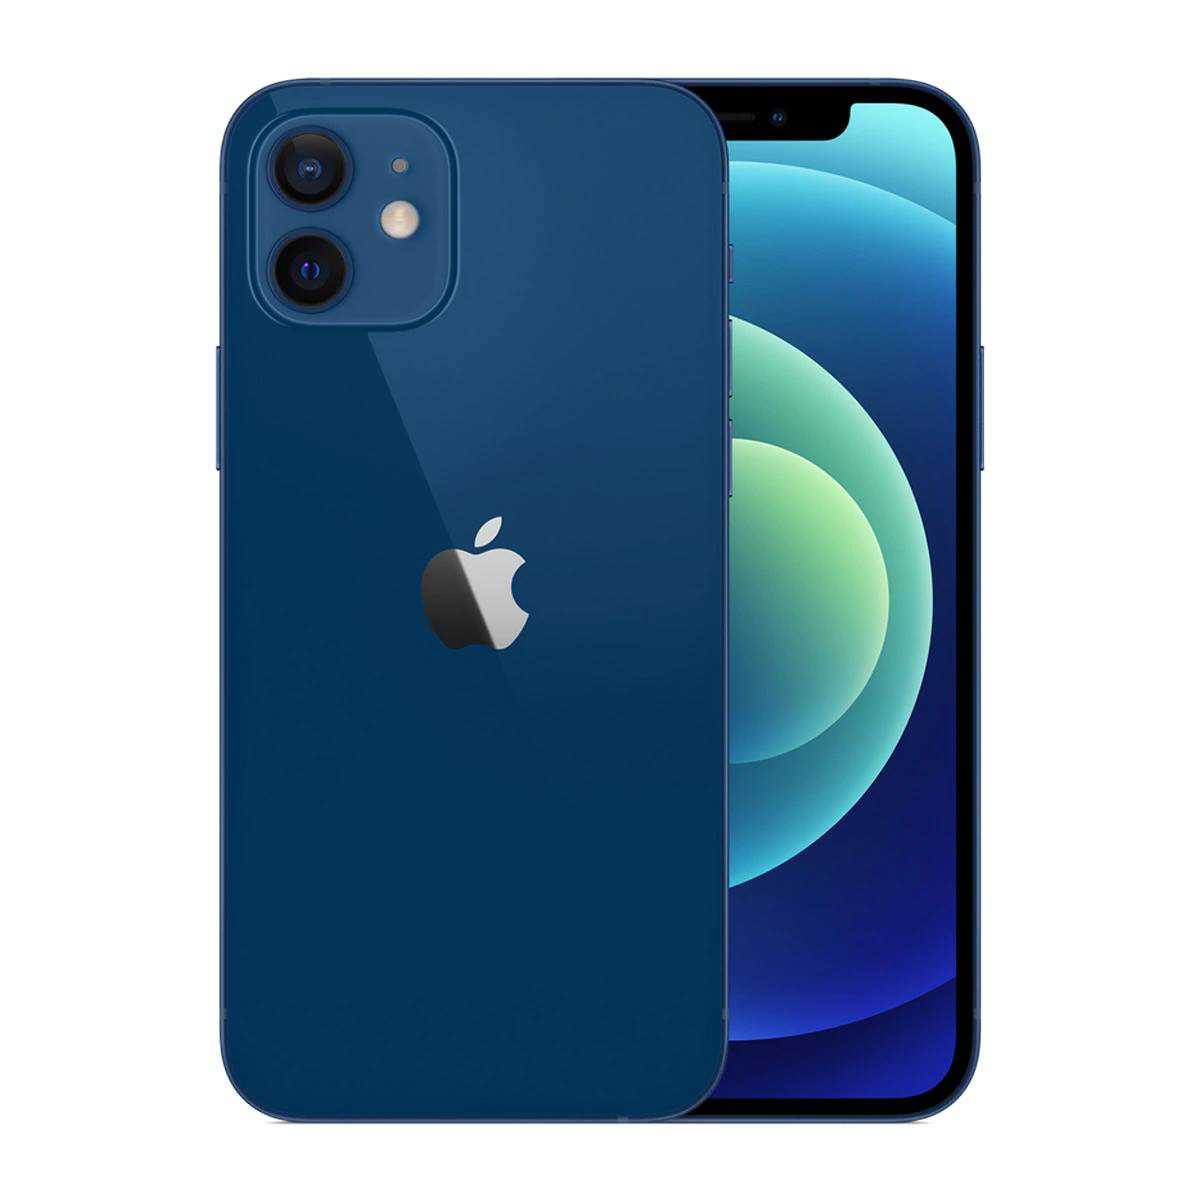 iPhone 12 màu xanh blue - một màu sắc độc đáo và cuốn hút sẽ thêm phần nổi bật cho chiếc điện thoại của bạn. Với hiệu năng mạnh mẽ, hệ thống camera tiên tiến và thiết kế đẹp mắt, iPhone 12 màu xanh blue sẽ khiến bạn không thể bỏ qua. Hãy tham gia trải nghiệm ngay hôm nay để khám phá thêm về iPhone 12 màu xanh blue và những tính năng đẳng cấp của nó.